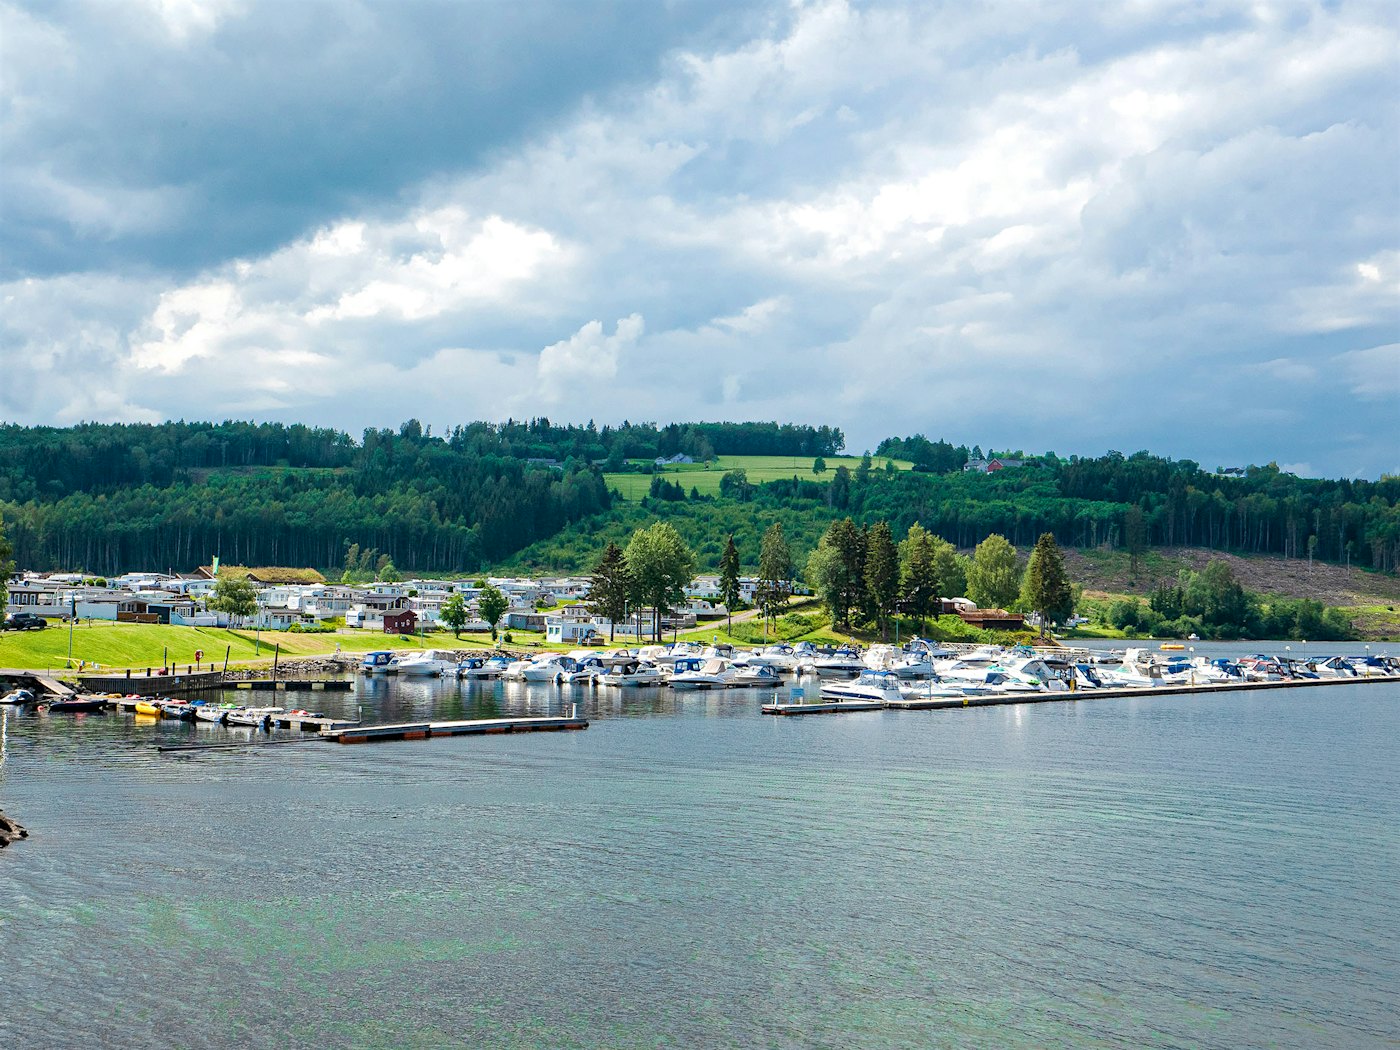 Übersicht über den Campingplatz mit dem Jachthafen im Vordergrund und dem Wald im Hintergrund. Foto